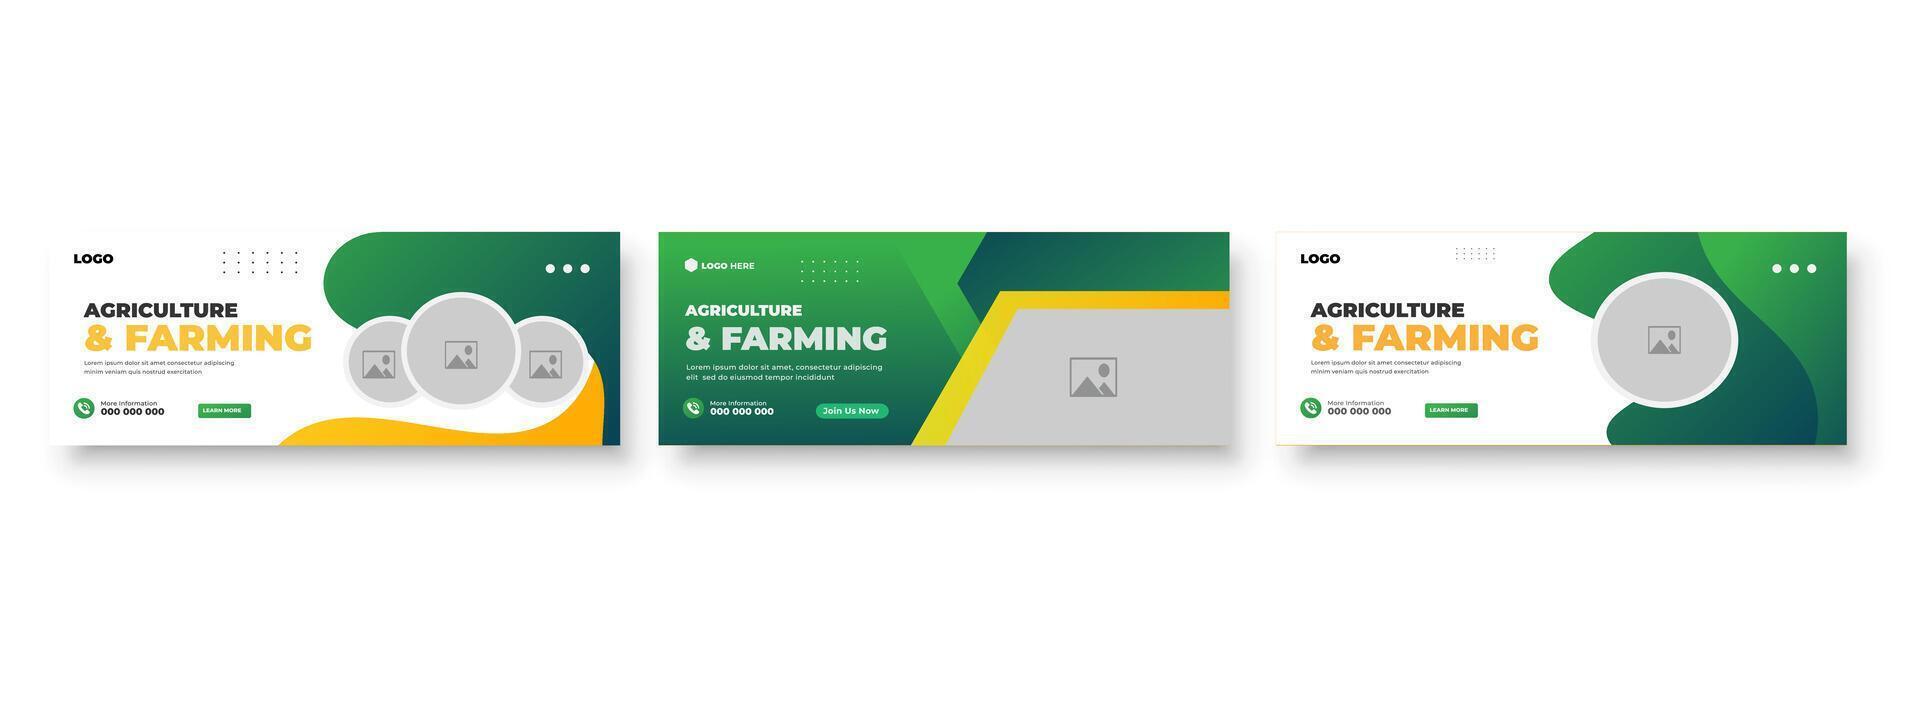 Landwirtschaft Landwirtschaft Bedienung Startseite und Sozial Medien Post Rasen Gartenarbeit bunt bündeln Vorlage vektor